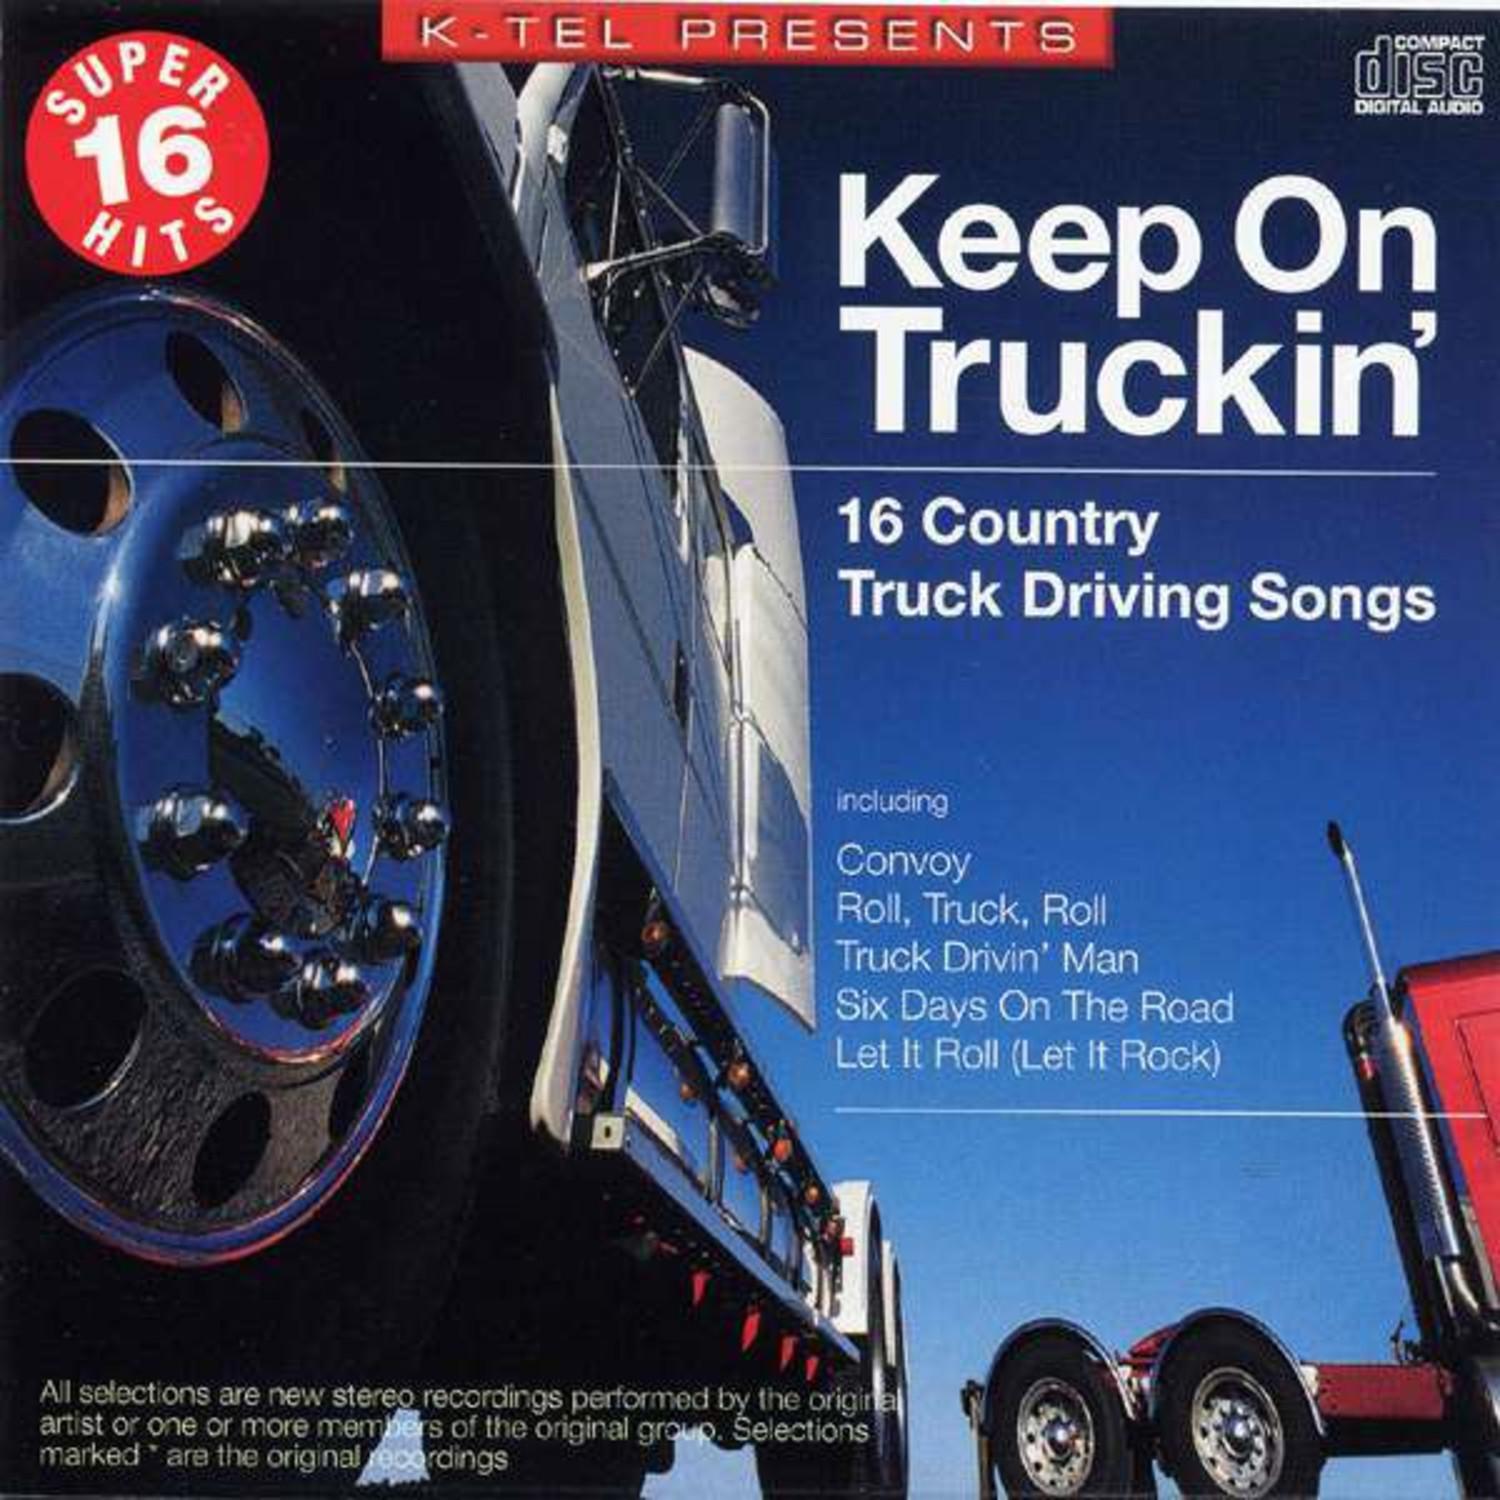 Super 16 Hits: Keep On Truckin'